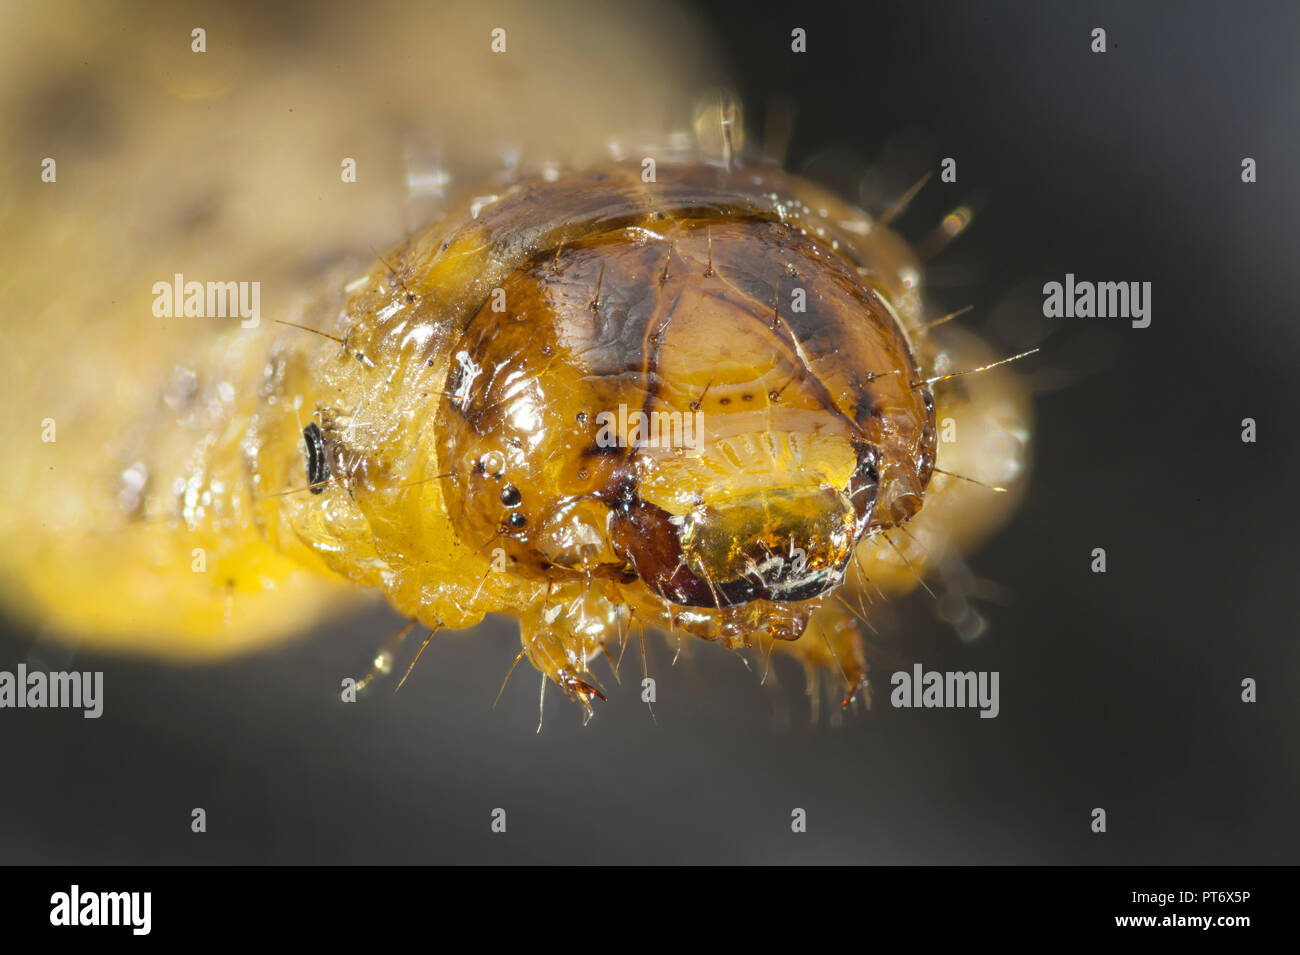 Noctuid moth oder Owlet moth Larve, cutworm oder armyworm, hohe makro Blick auf Kopf, Mundwerkzeuge, Augen Stockfoto